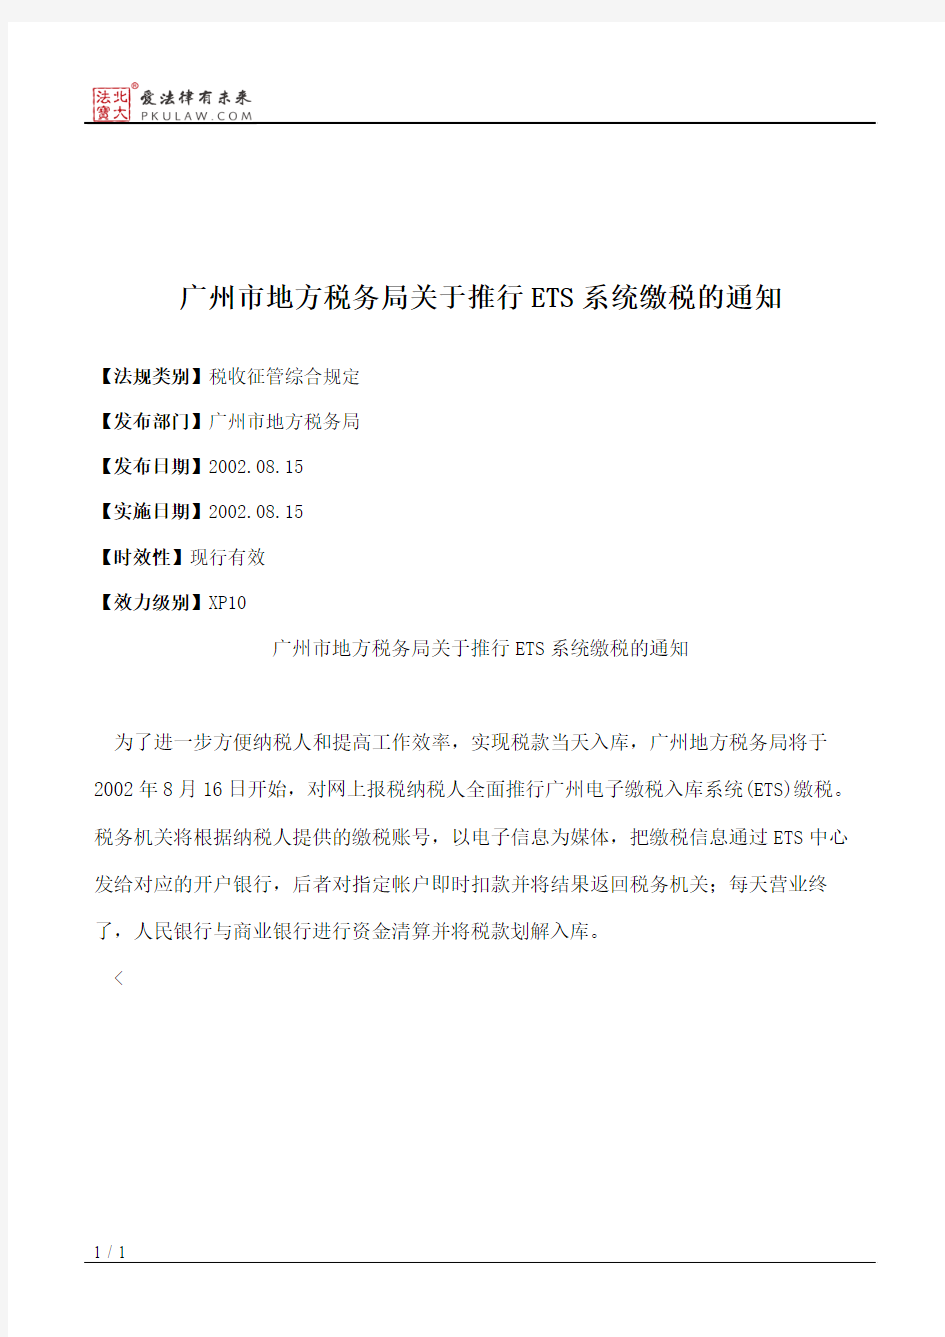 广州市地方税务局关于推行ETS系统缴税的通知